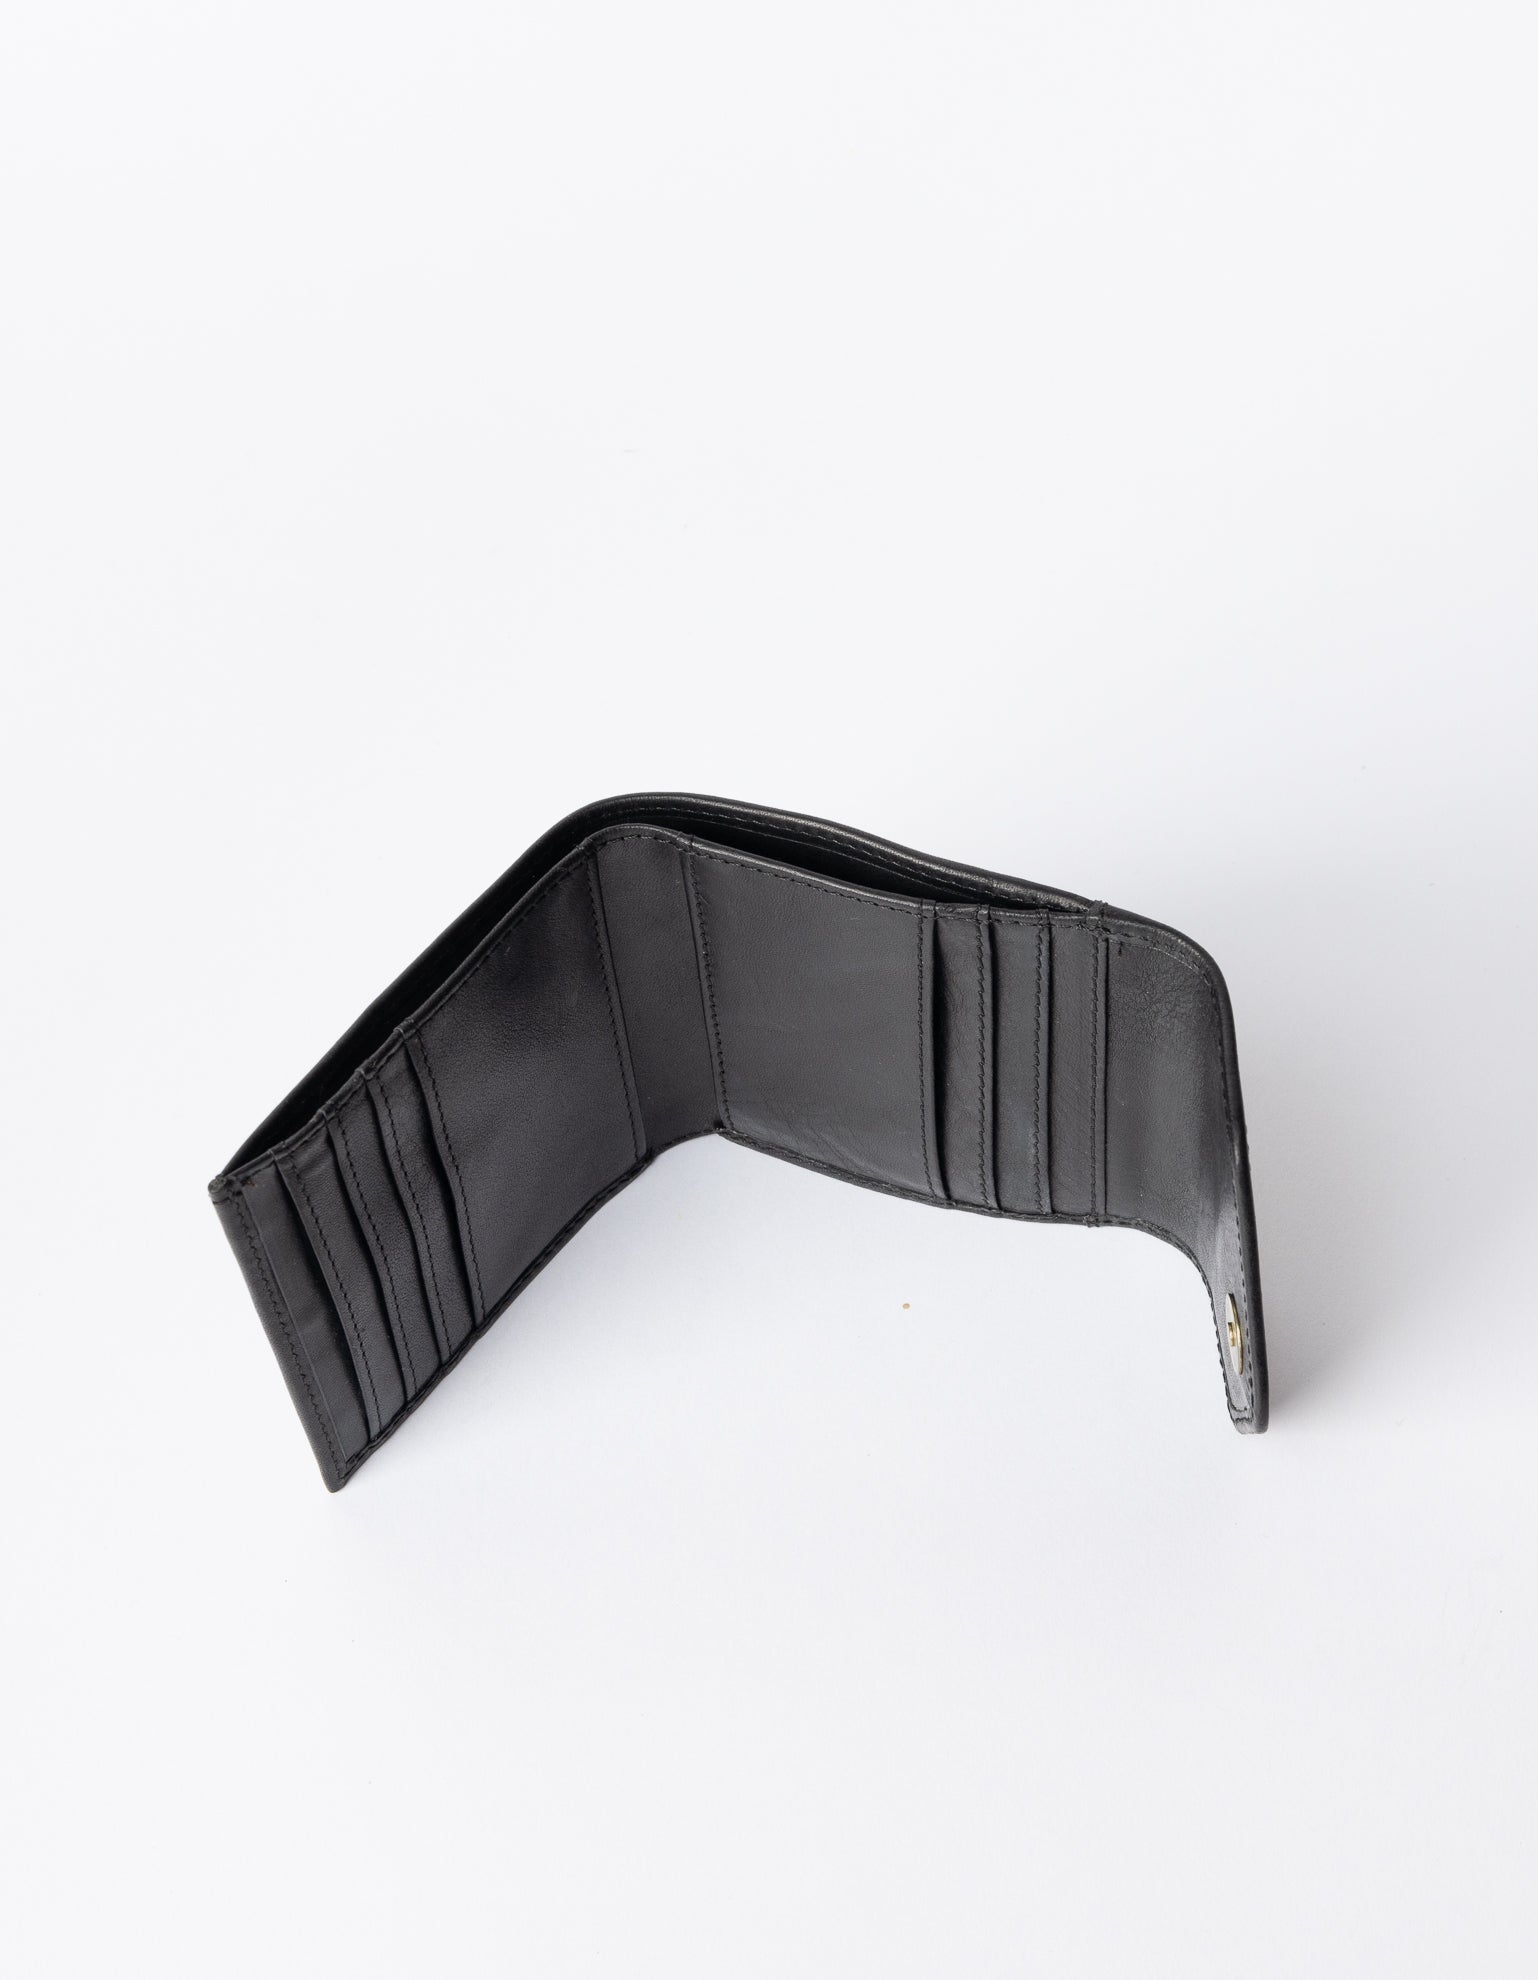 Black wallet. Square Envelope shape. Inside product image.